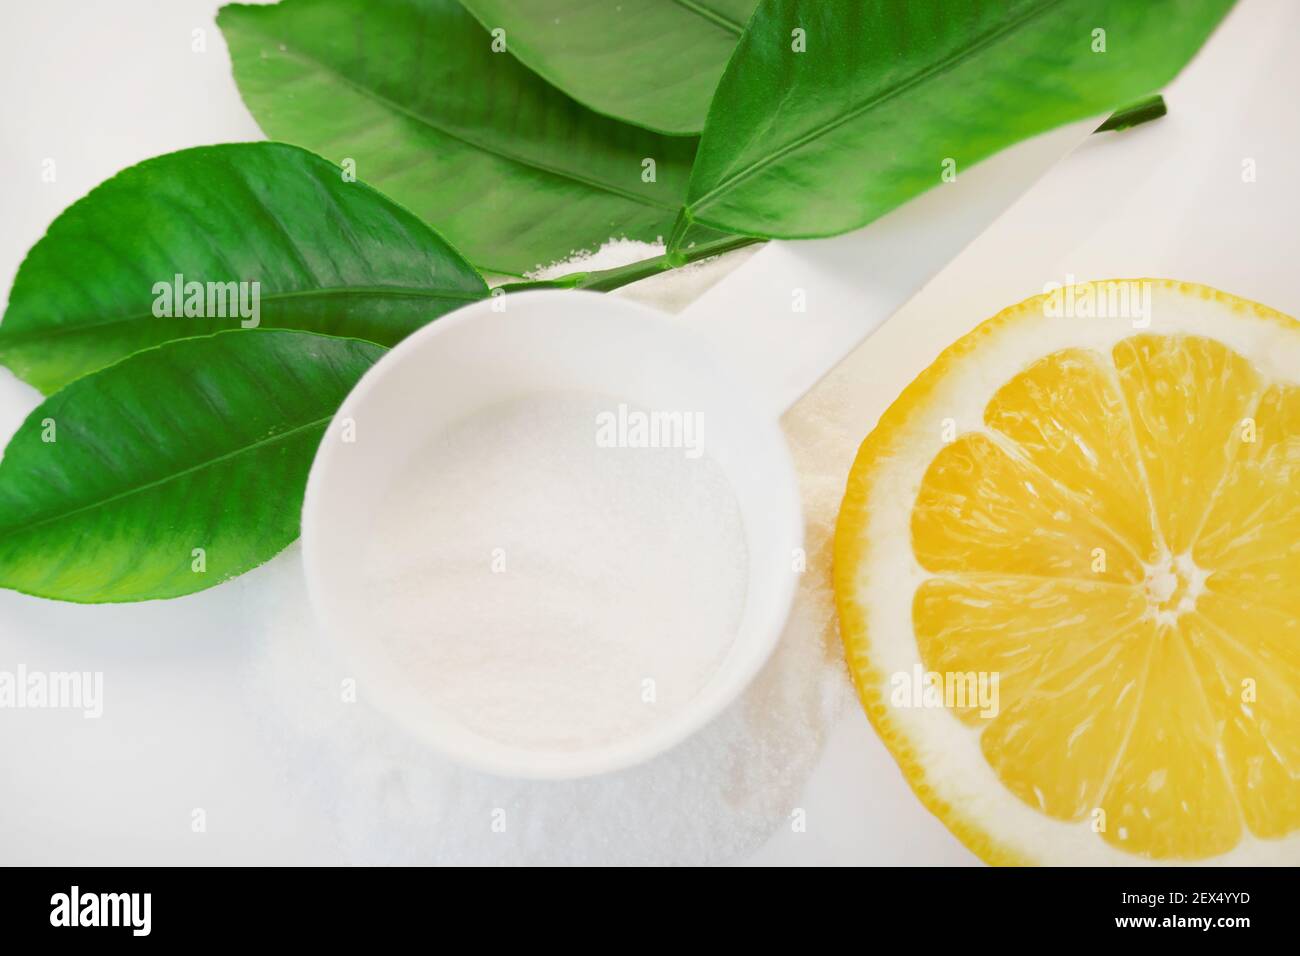 Polvere di vitamina C in un cucchiaio bianco, taglio limone e foglie verdi su uno sfondo bianco.prevenzione di raffreddori e influenza. Un farmaco per rafforzare l'immunità Foto Stock